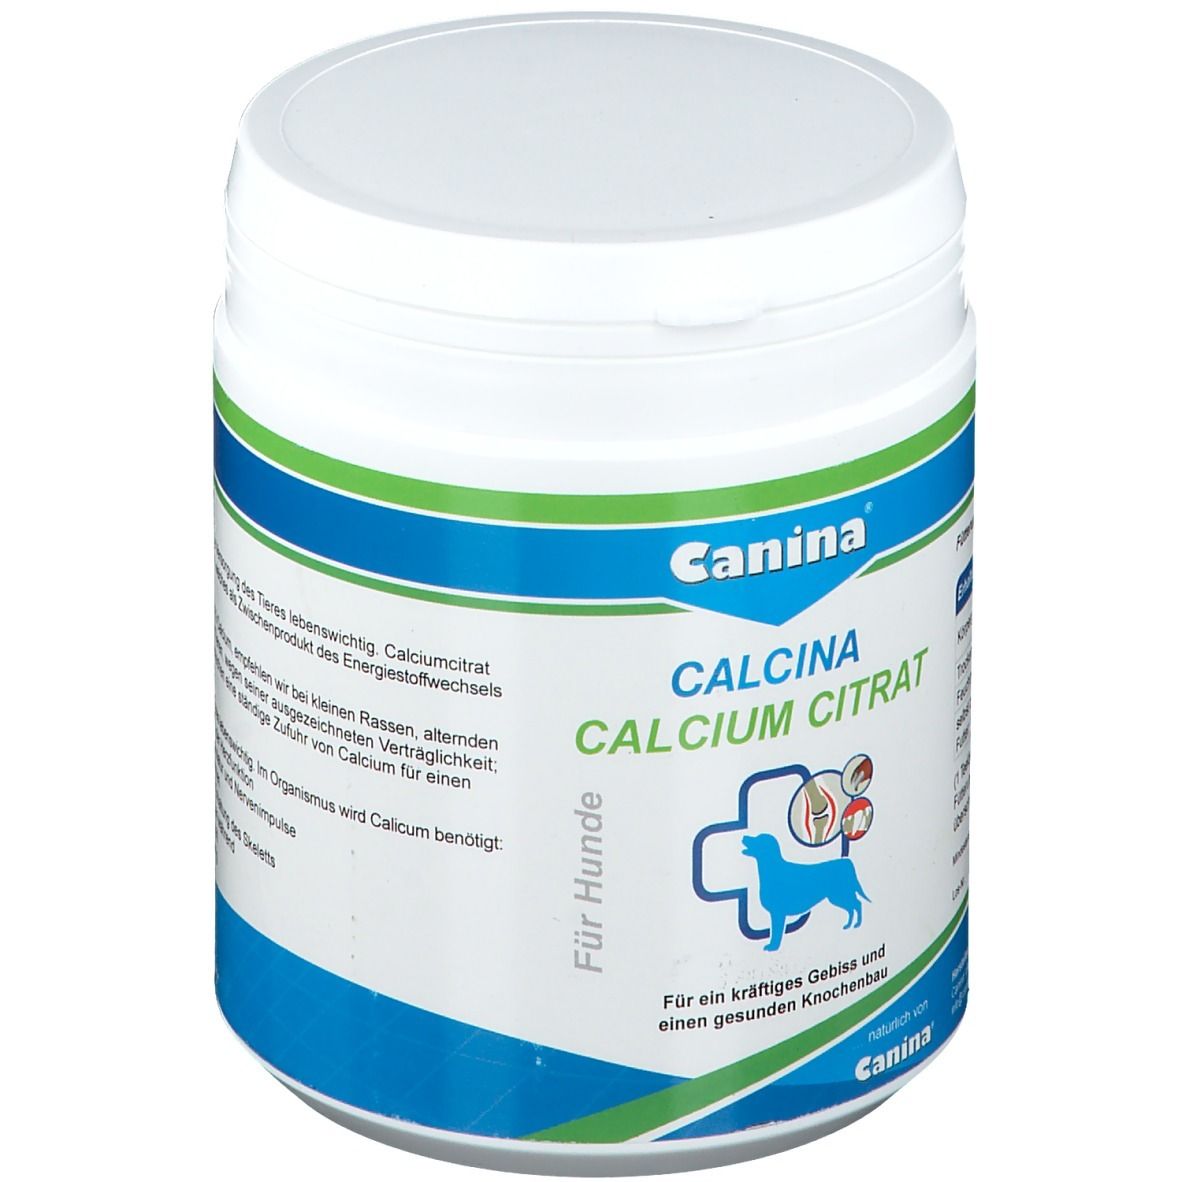 Canina® Calcium Citrat